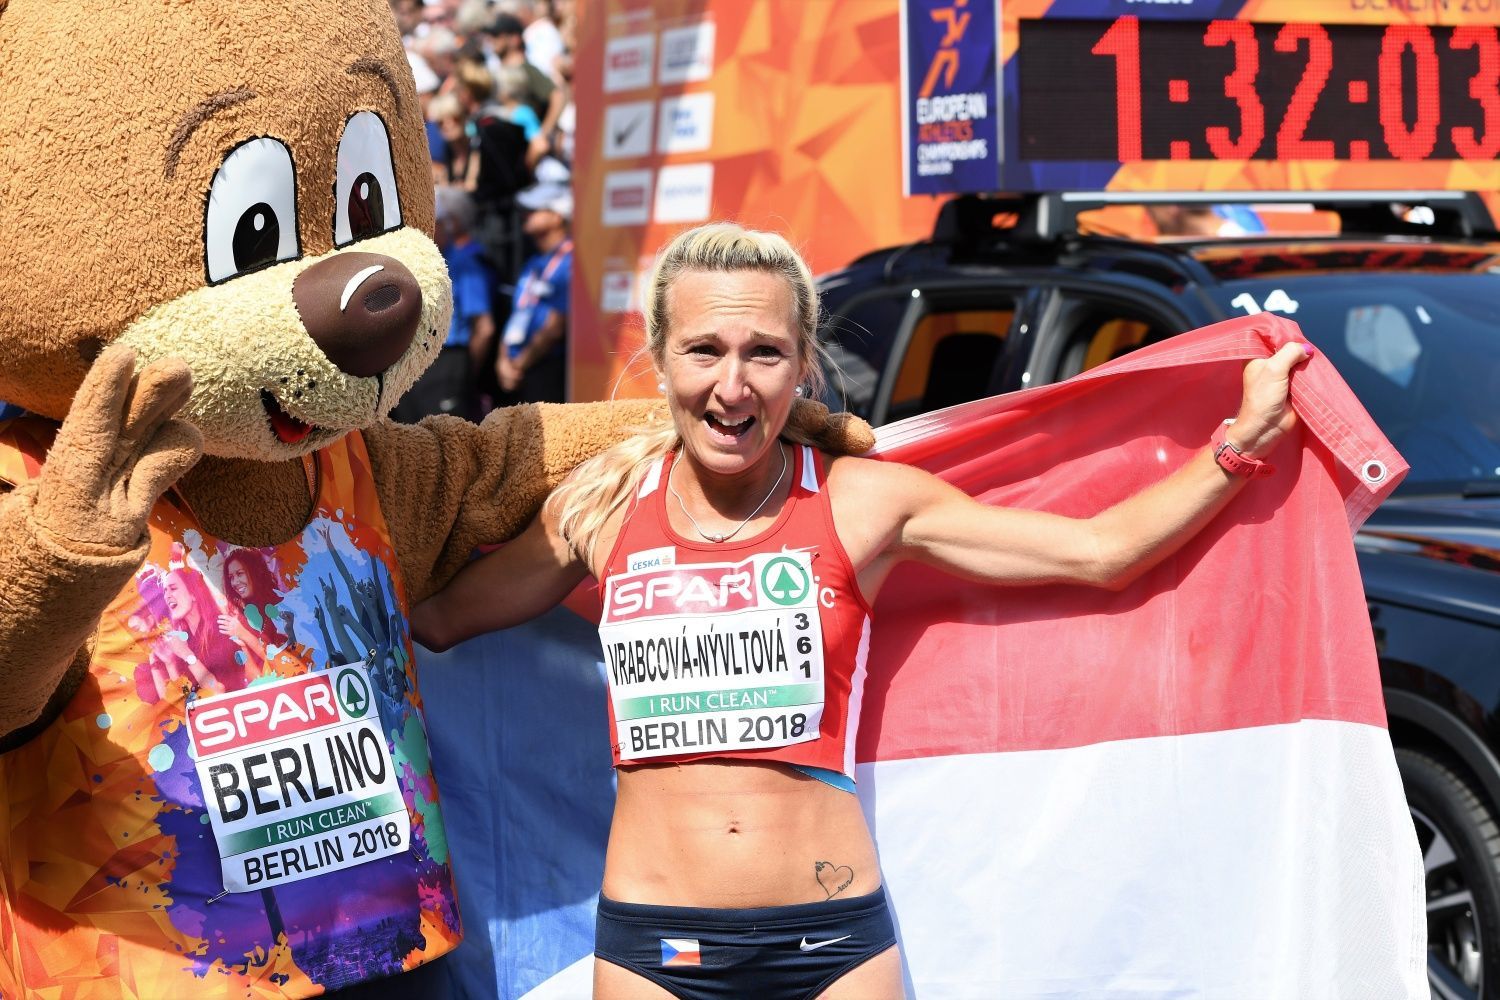 Bronzová Eva Vrabcová-Nyvltová v cíli maratonu na ME v atletice v Berlíně 2018